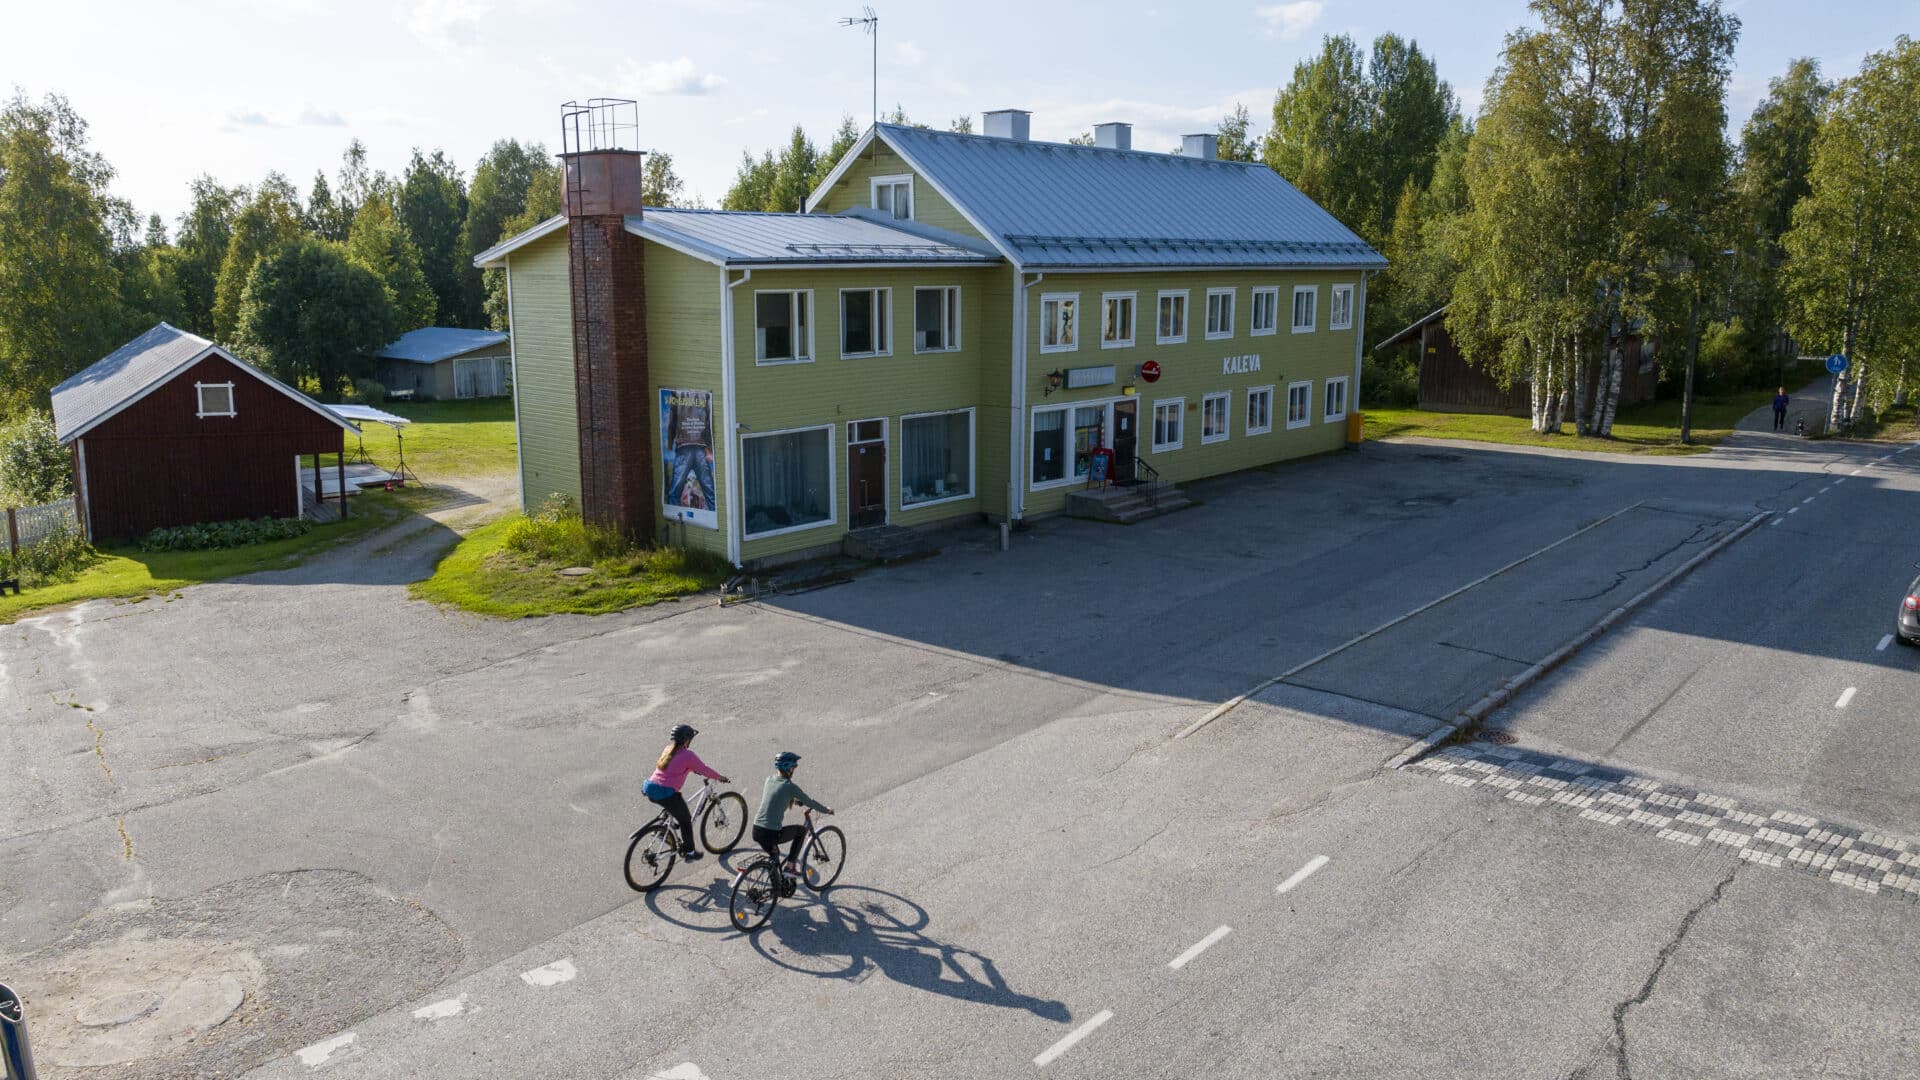 Pyöräilijät kesäiltana Suomussalmen kirkonkylällä. Kuva ilmasta kuvattu, Wanhan kalevan baari näkyy pyöräilijöiden takana. Kaleva on vihreä suuri rakennus.